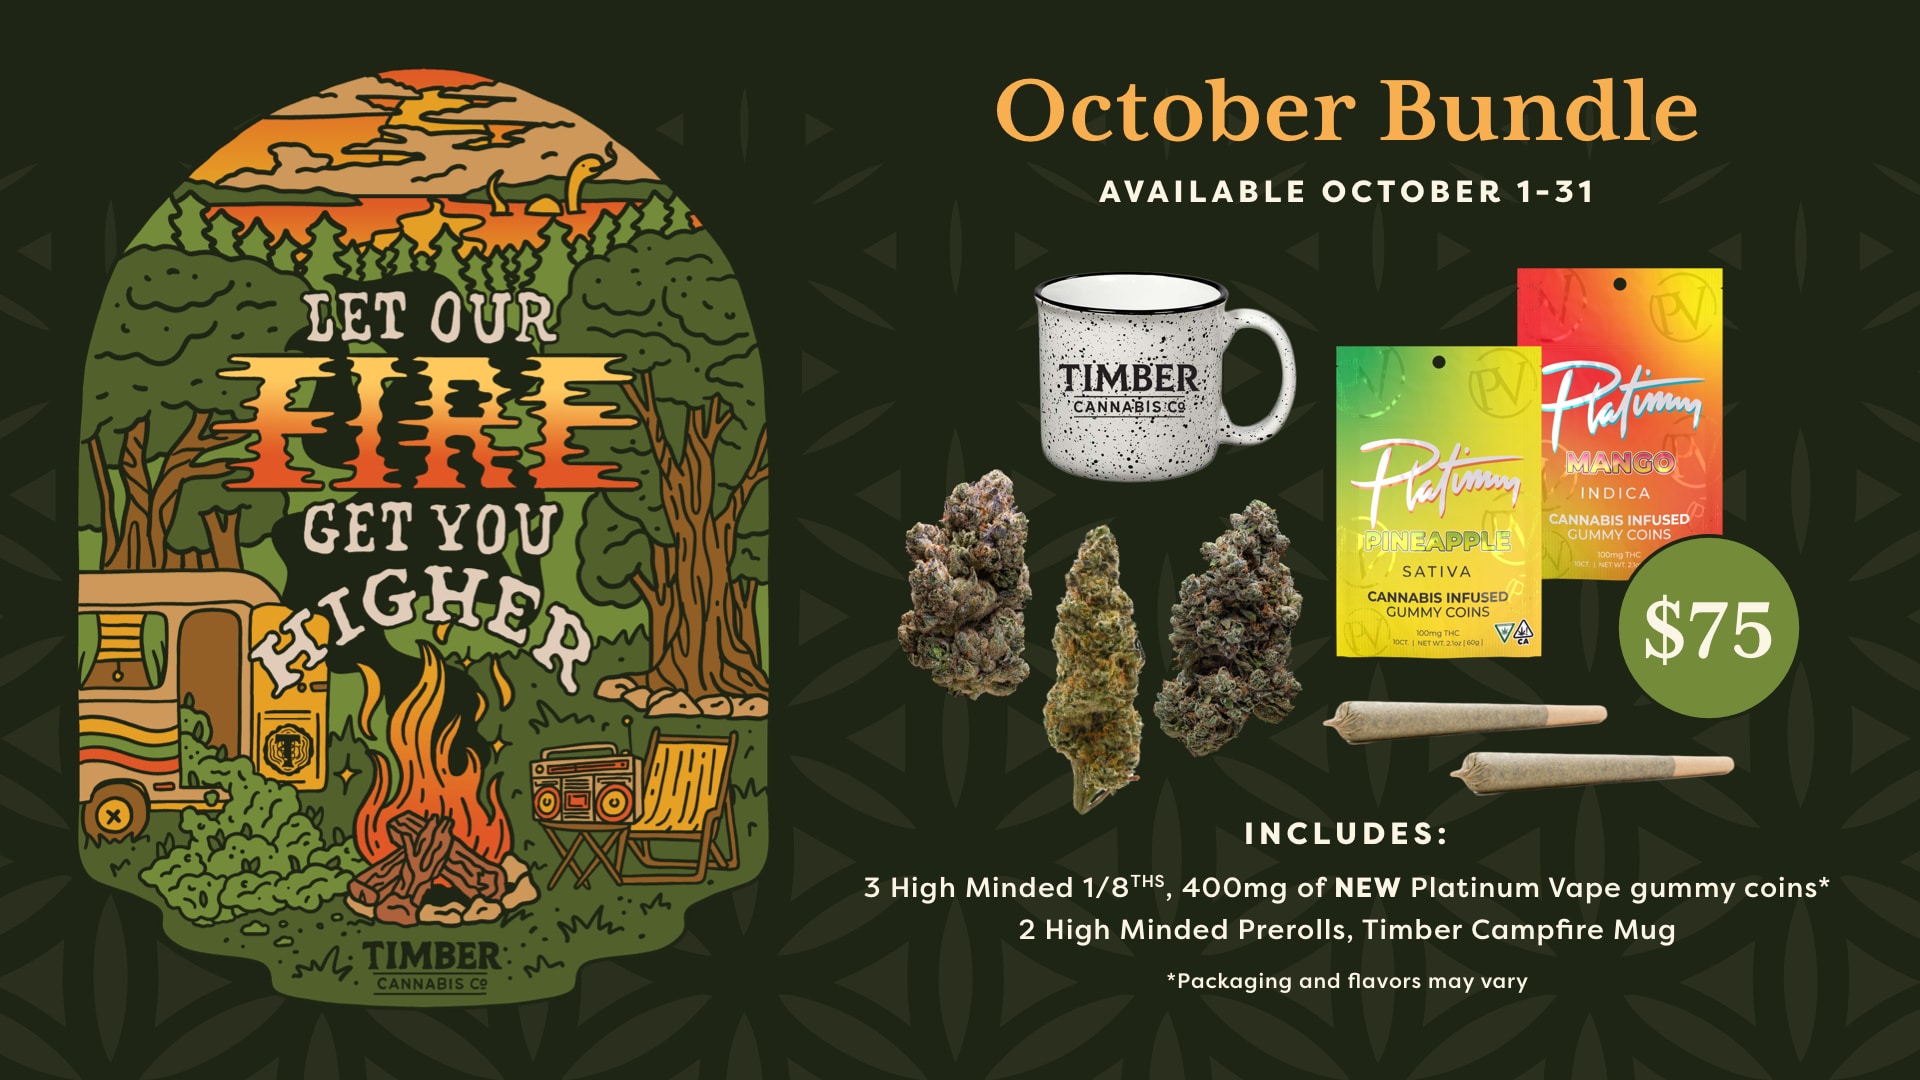 Let Our Fire Get You Higher October Bundle